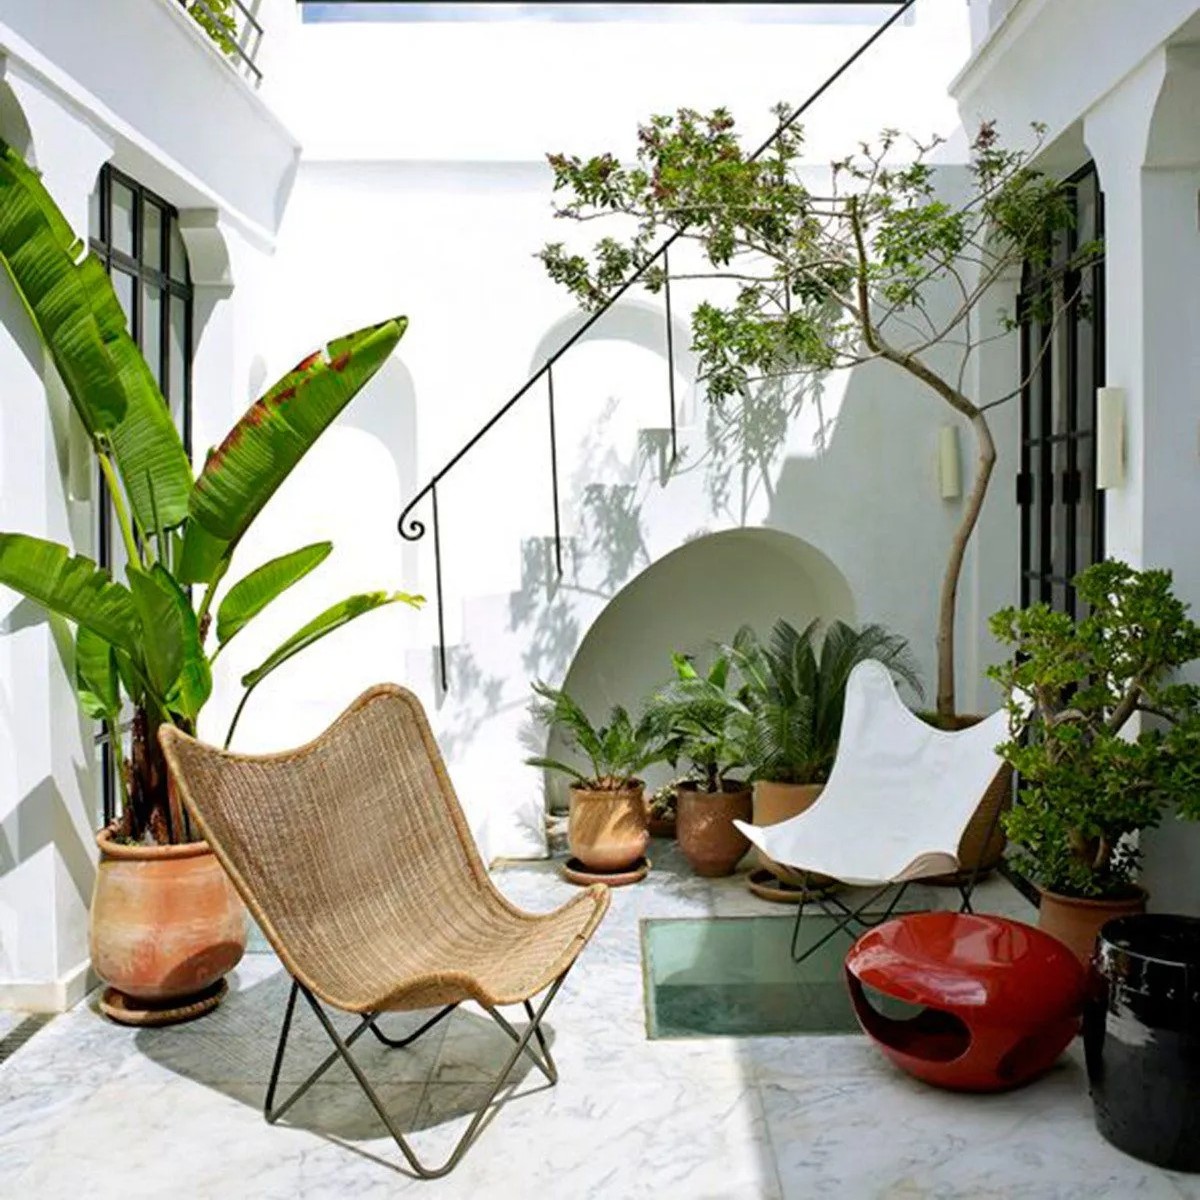 Patio avec chaises de jardin, plantes vertes, cour carrée blanche